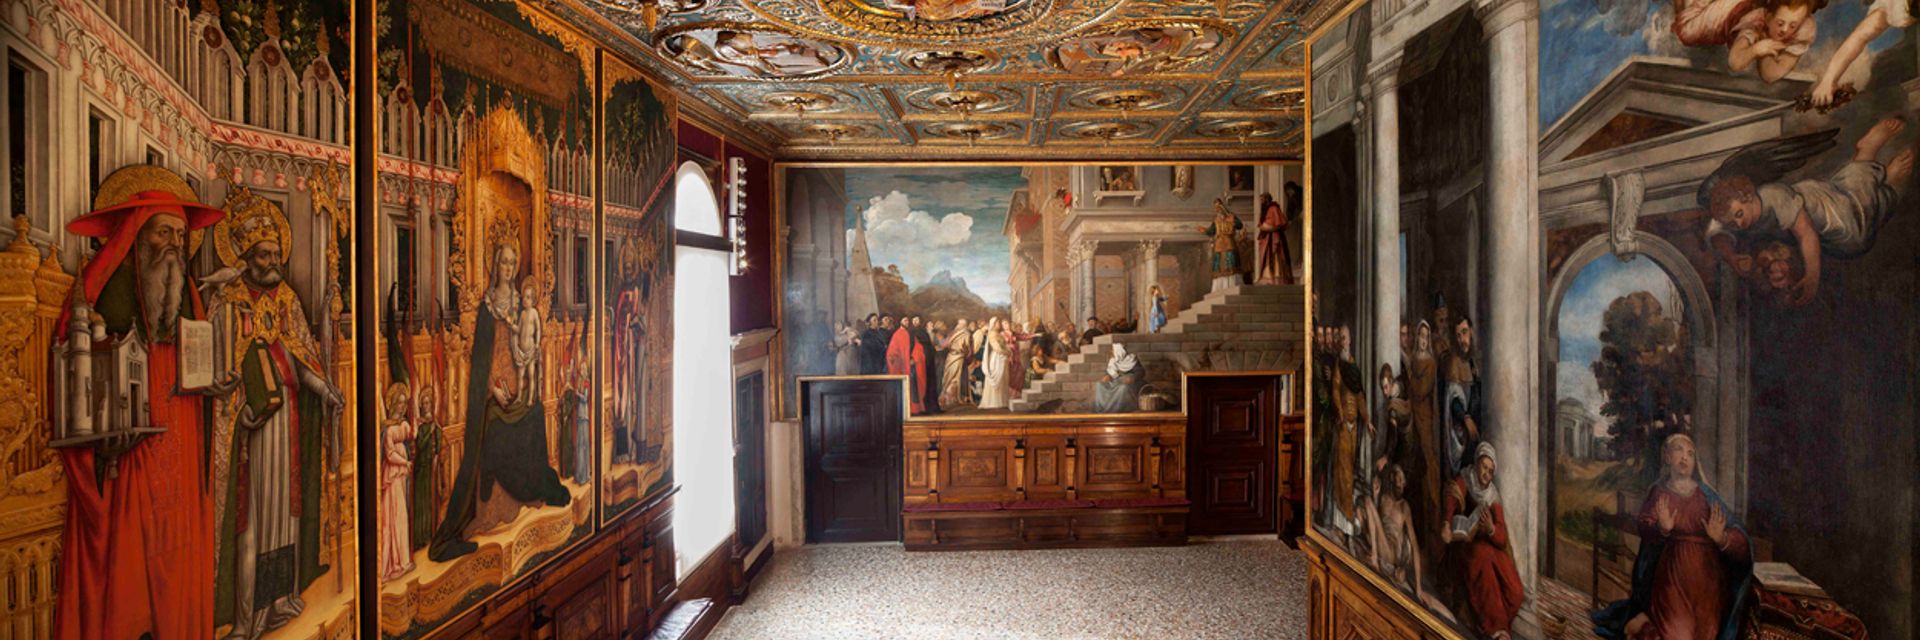 Gallerie dell’Accademia di Venezia